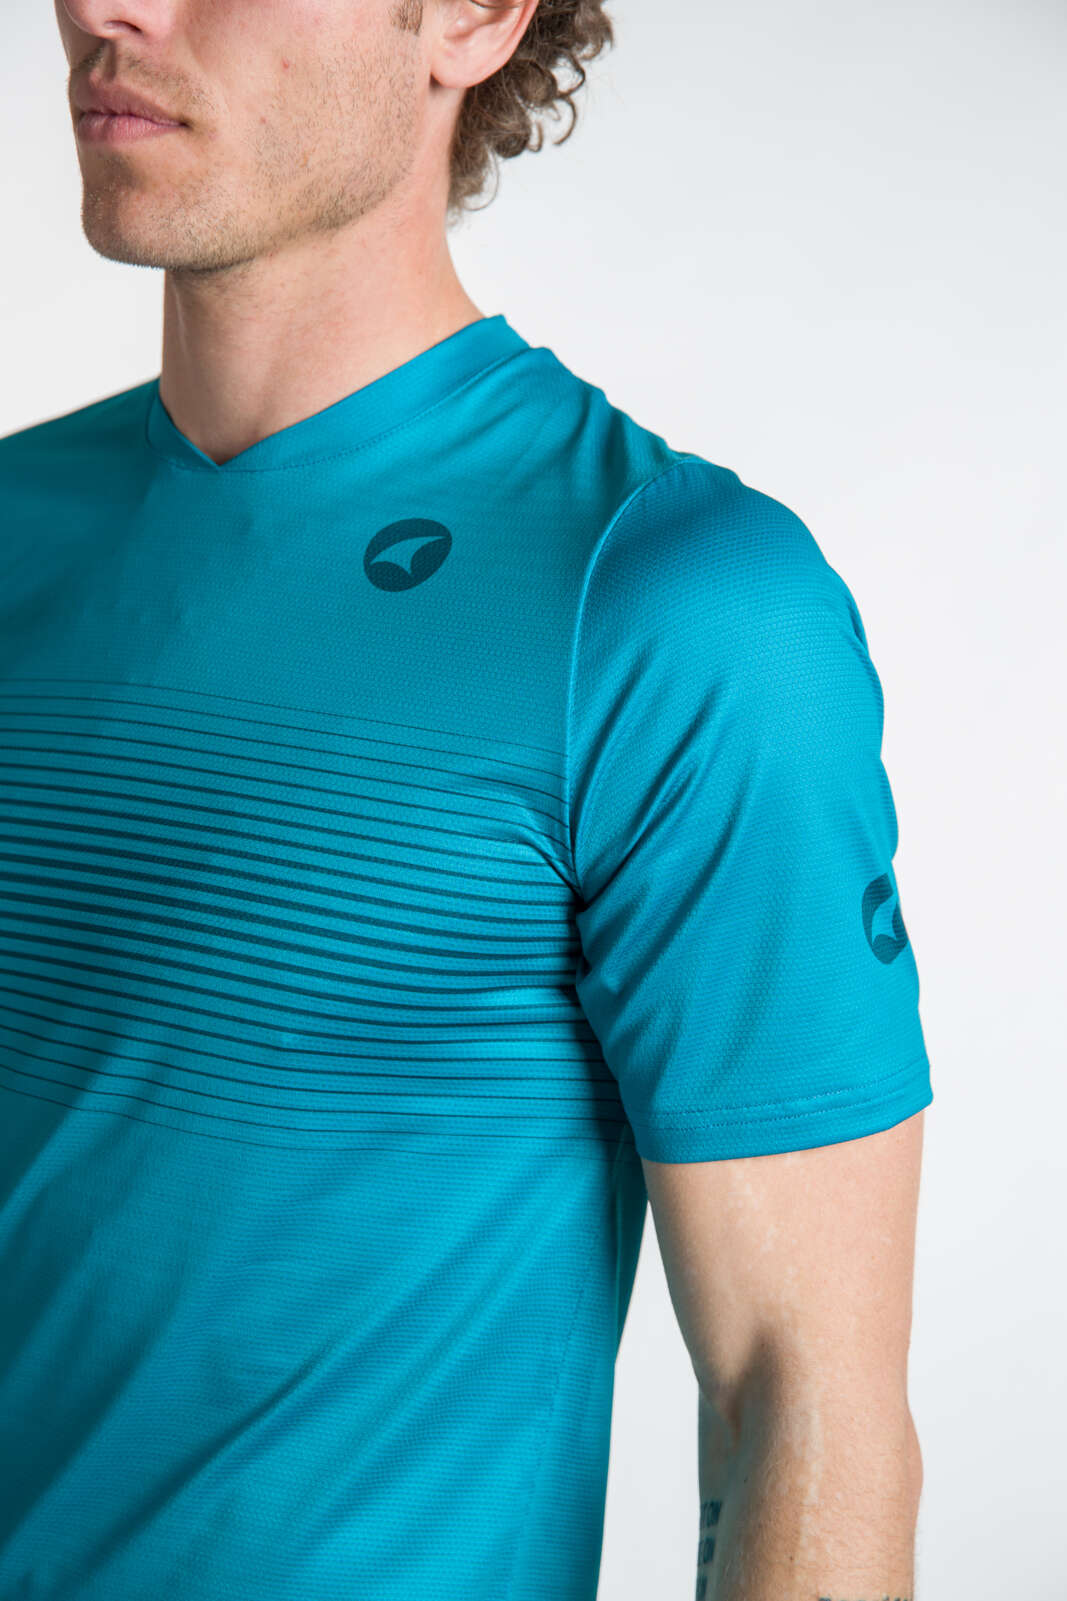 Men's Running Shirt - Sleeve Detail